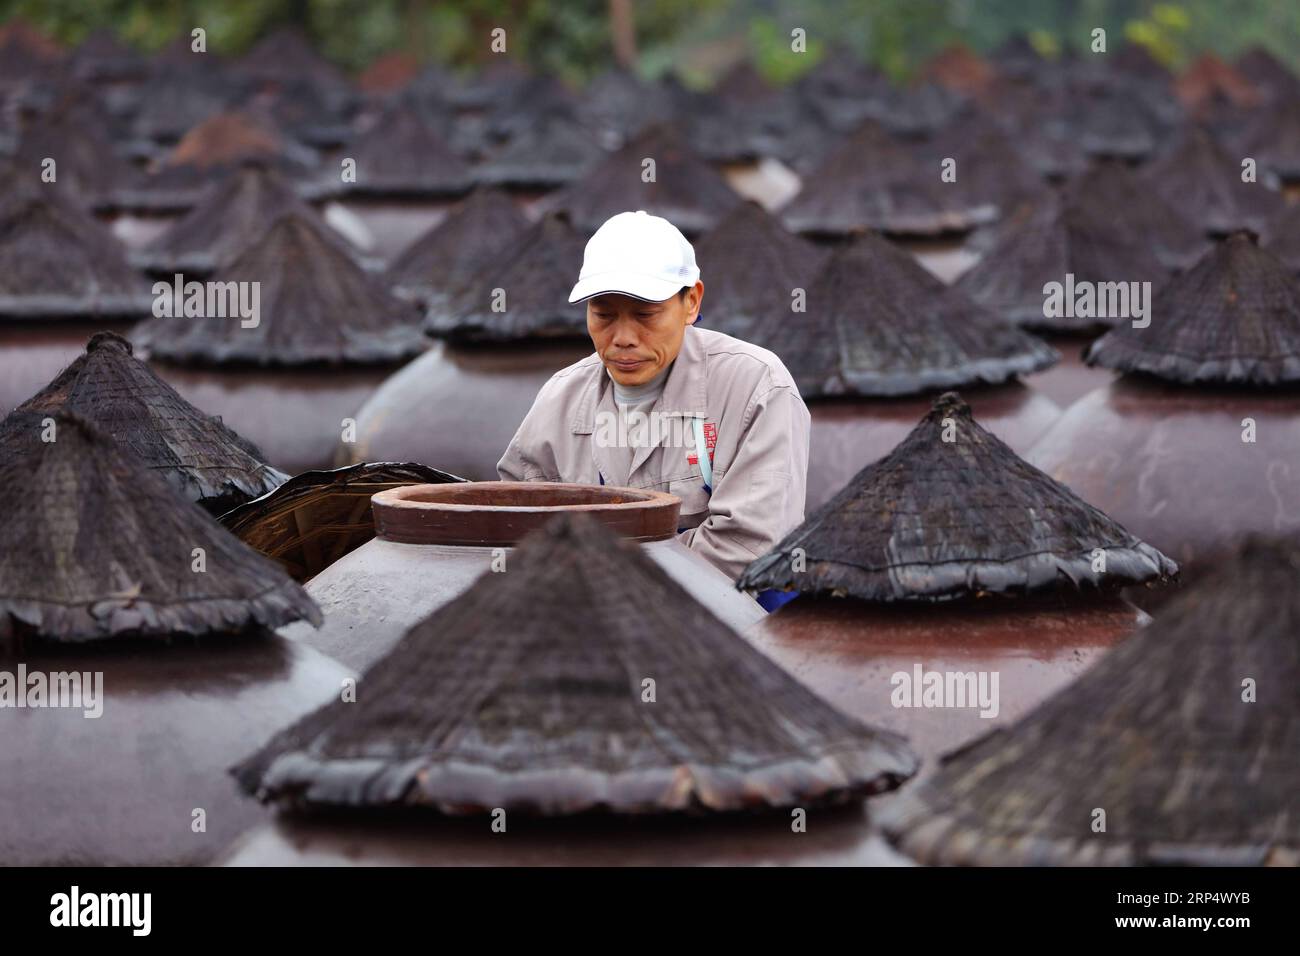 (181119) -- ZUNYI, 19. November 2018 -- Ein Arbeiter kontrolliert den Essig, der in einem Glas in einer Essigfabrik in Chishui, Provinz Guizhou im Südwesten Chinas, am 18. November 2018 ausgestoßen wurde. Chishui hat eine traditionelle Methode zur Essigherstellung mit über 30 Prozessschritten beibehalten.) (Ry) CHINA-GUIZHOU-ESSIGHERSTELLUNG (CN) WangxChangyu PUBLICATIONxNOTxINxCHN Stockfoto